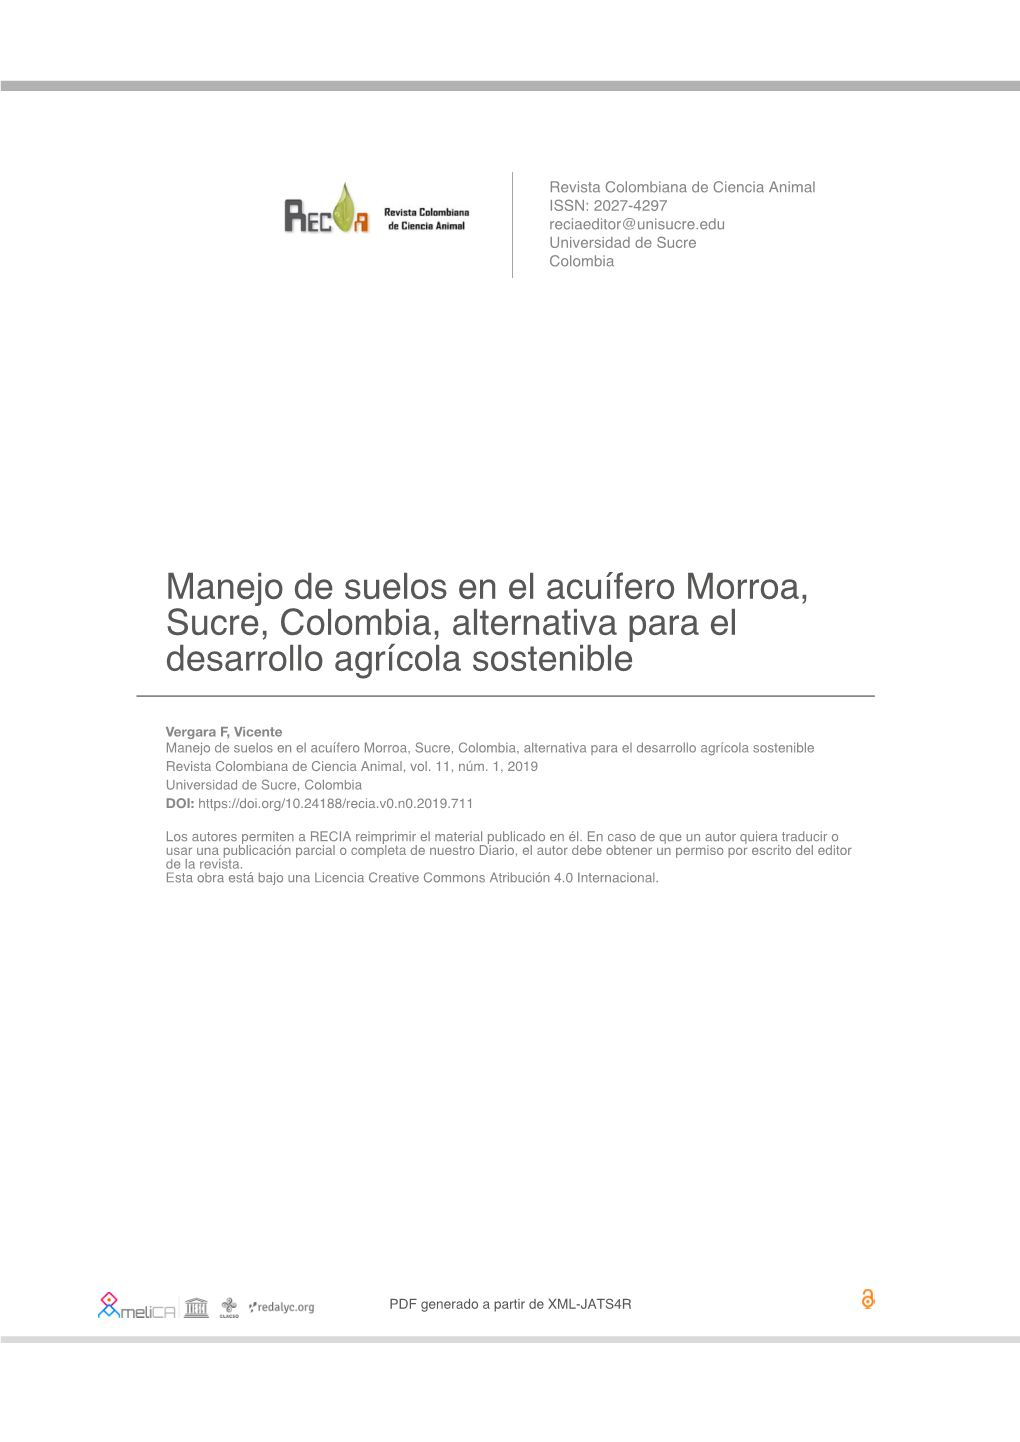 Manejo De Suelos En El Acuífero Morroa, Sucre, Colombia, Alternativa Para El Desarrollo Agrícola Sostenible